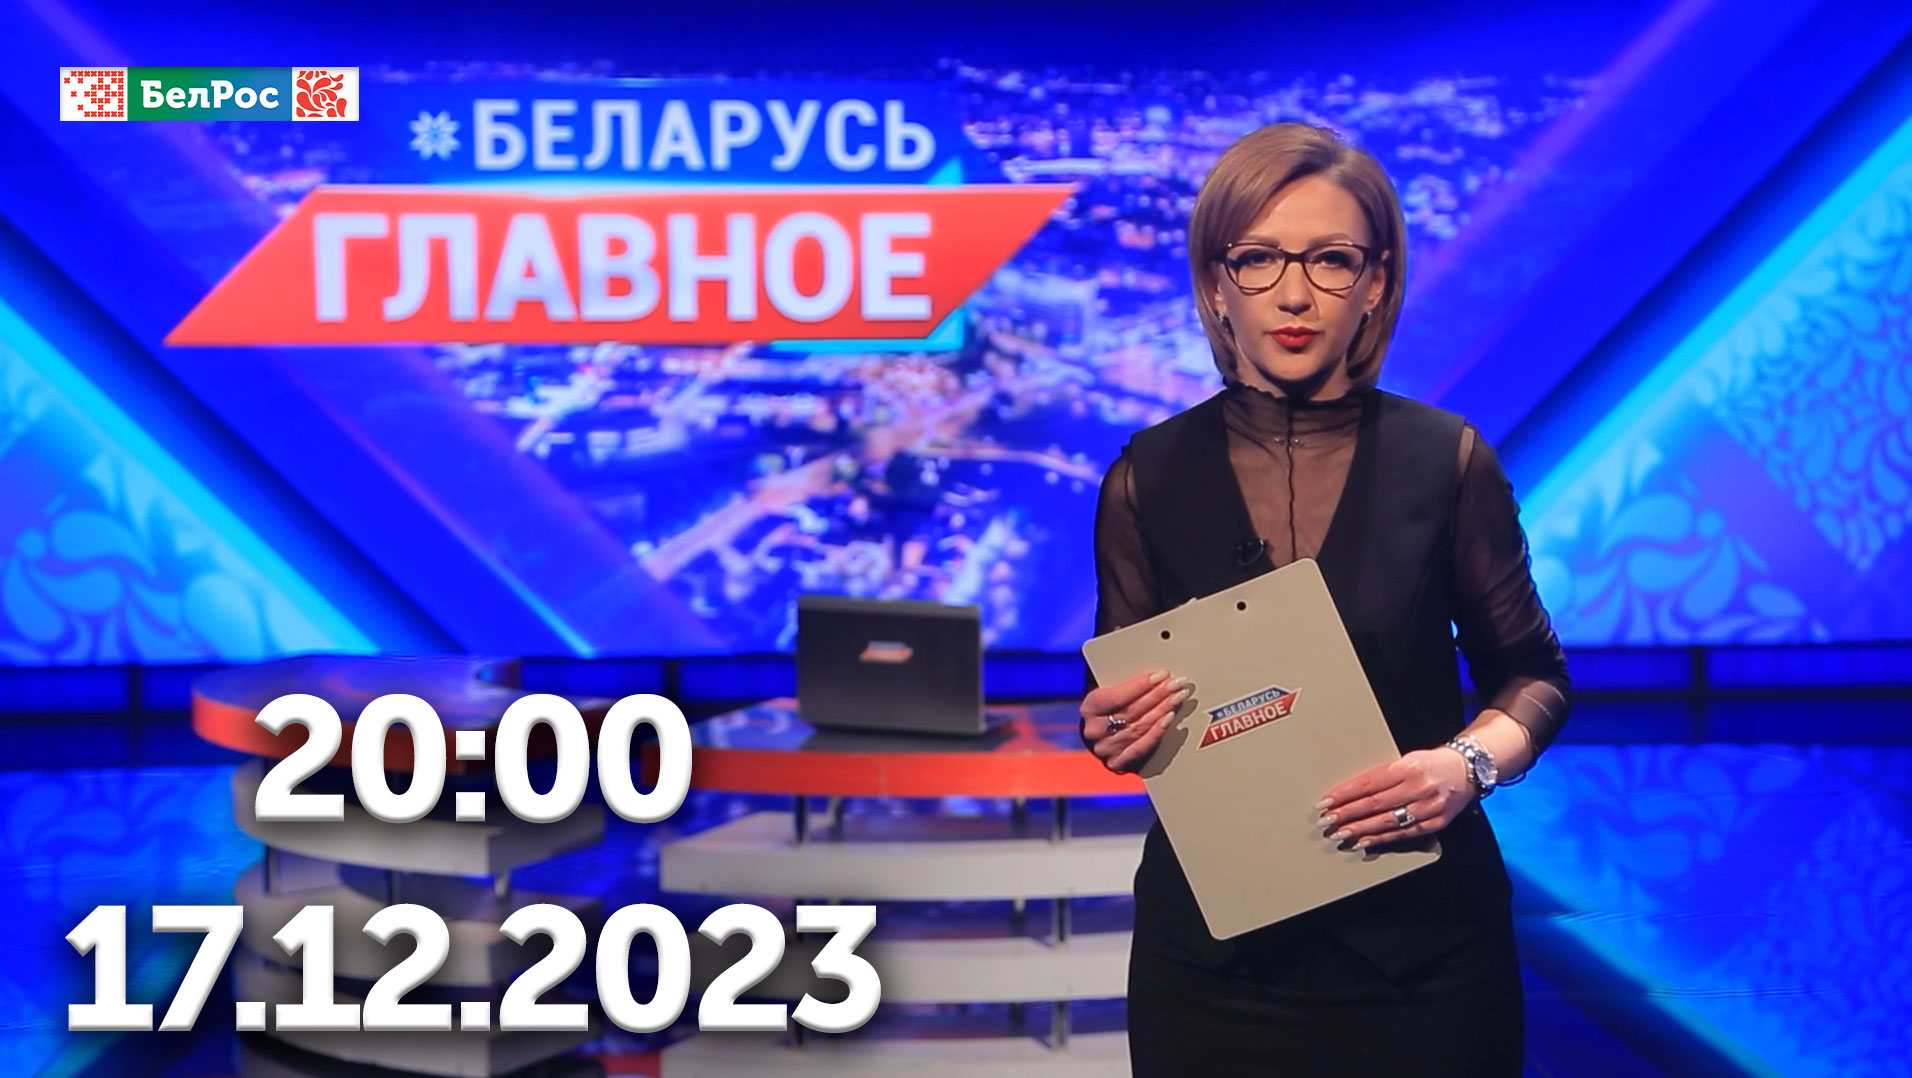 Беларусь. Главное | 17.12.2023